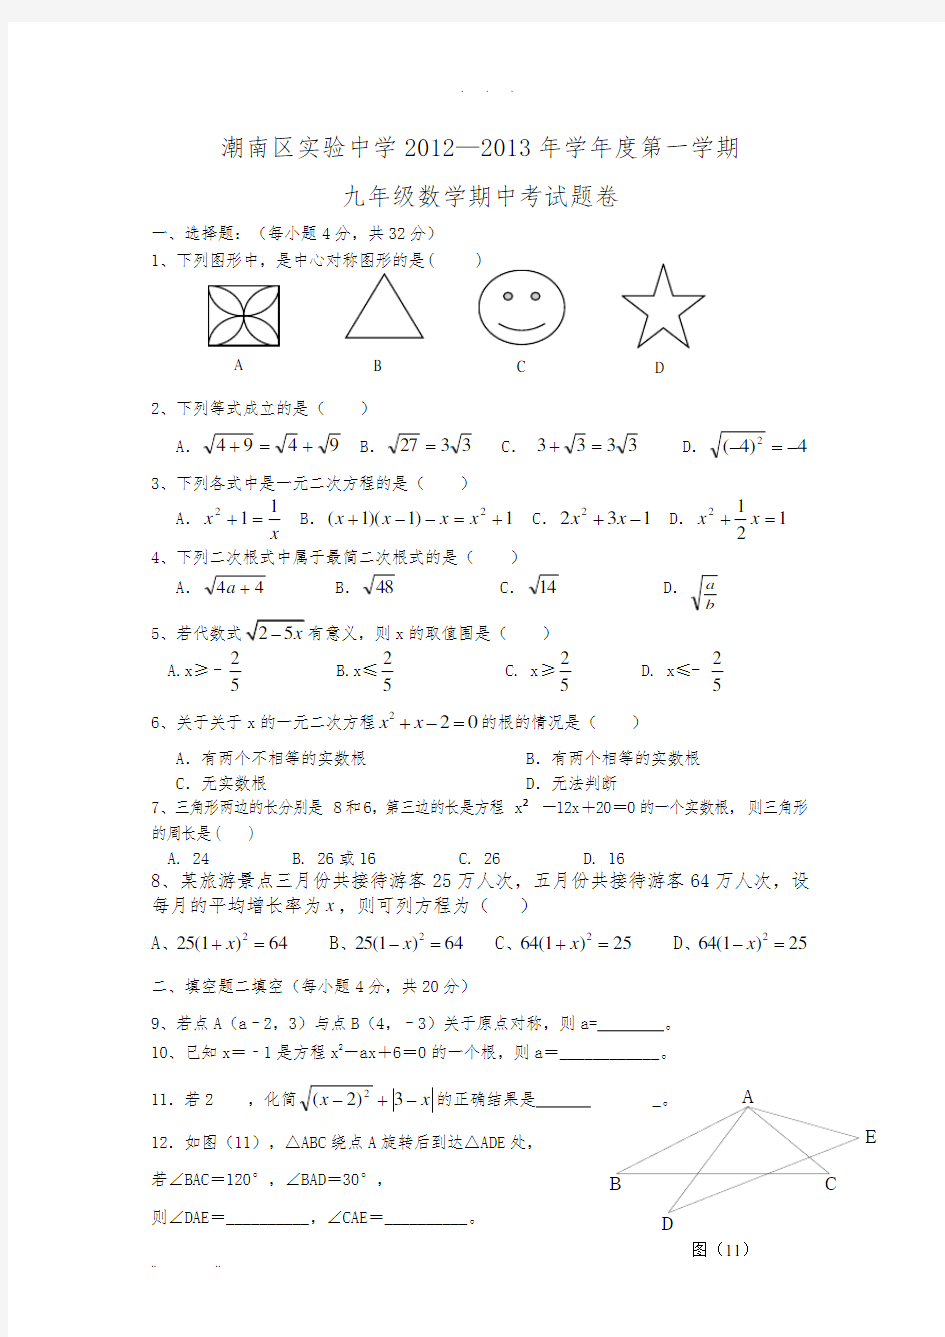 初三数学(上册)期中考试试卷及答案